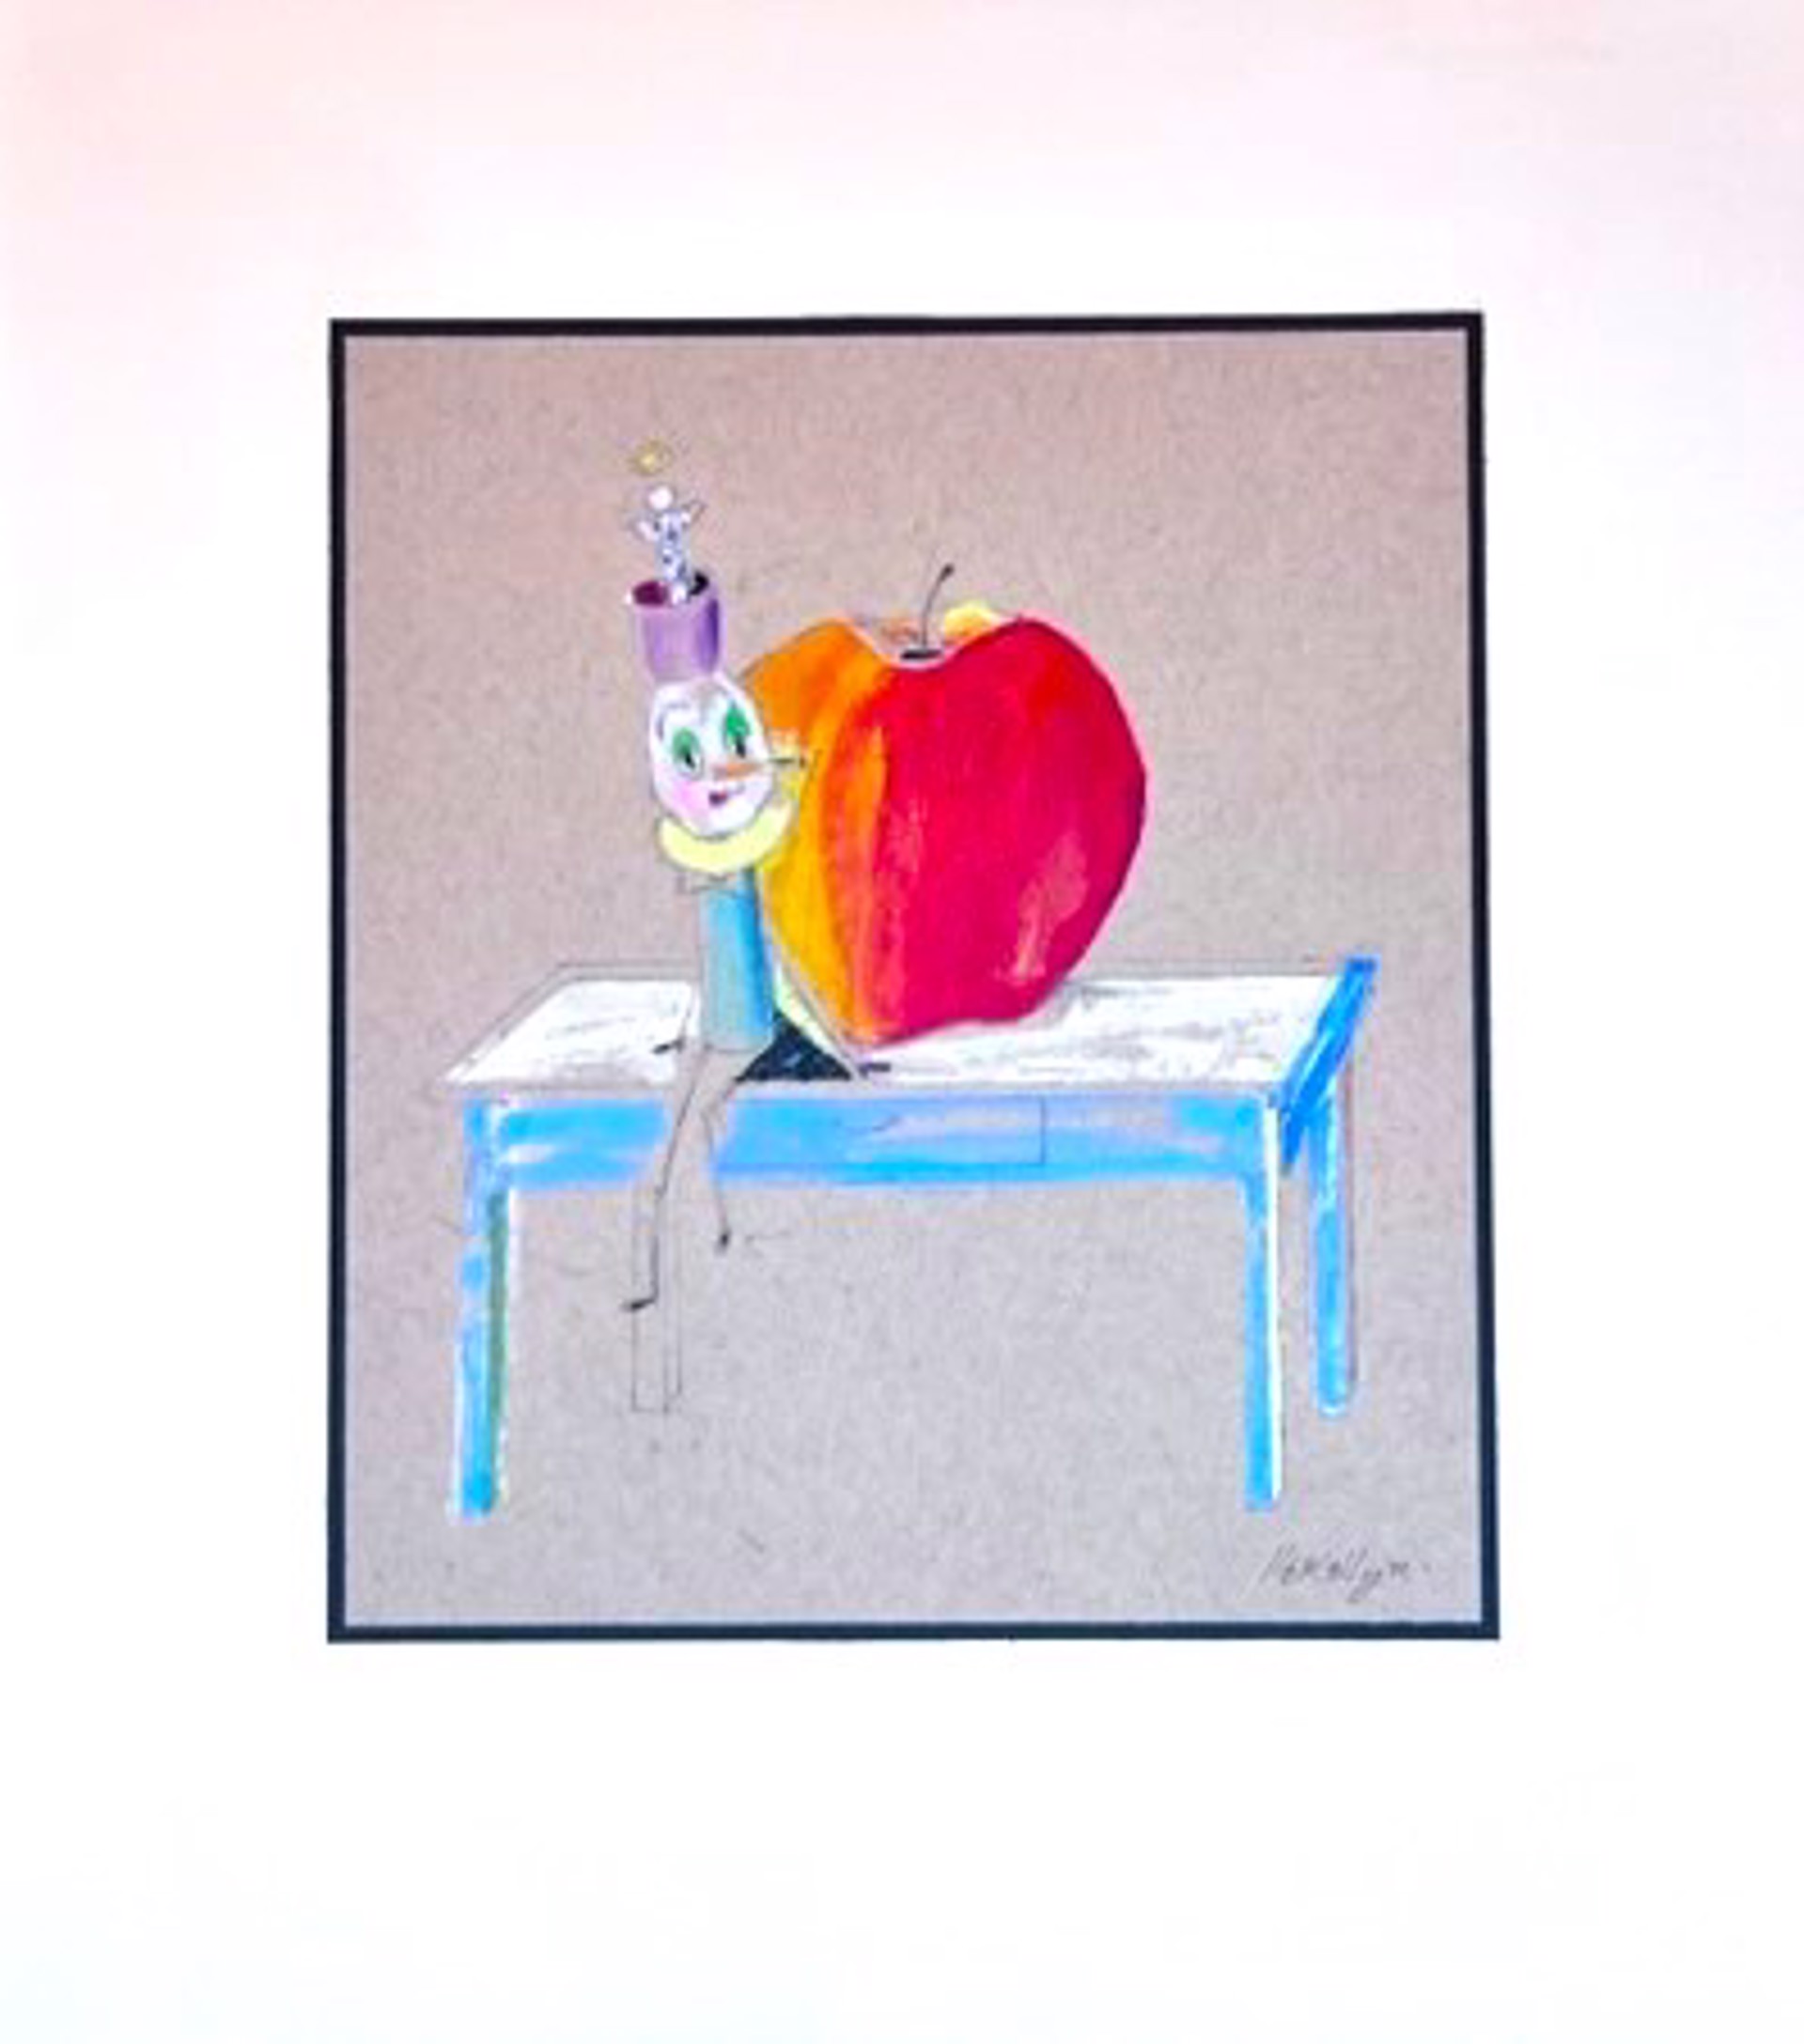 The Big Apple by Sue LLewellyn